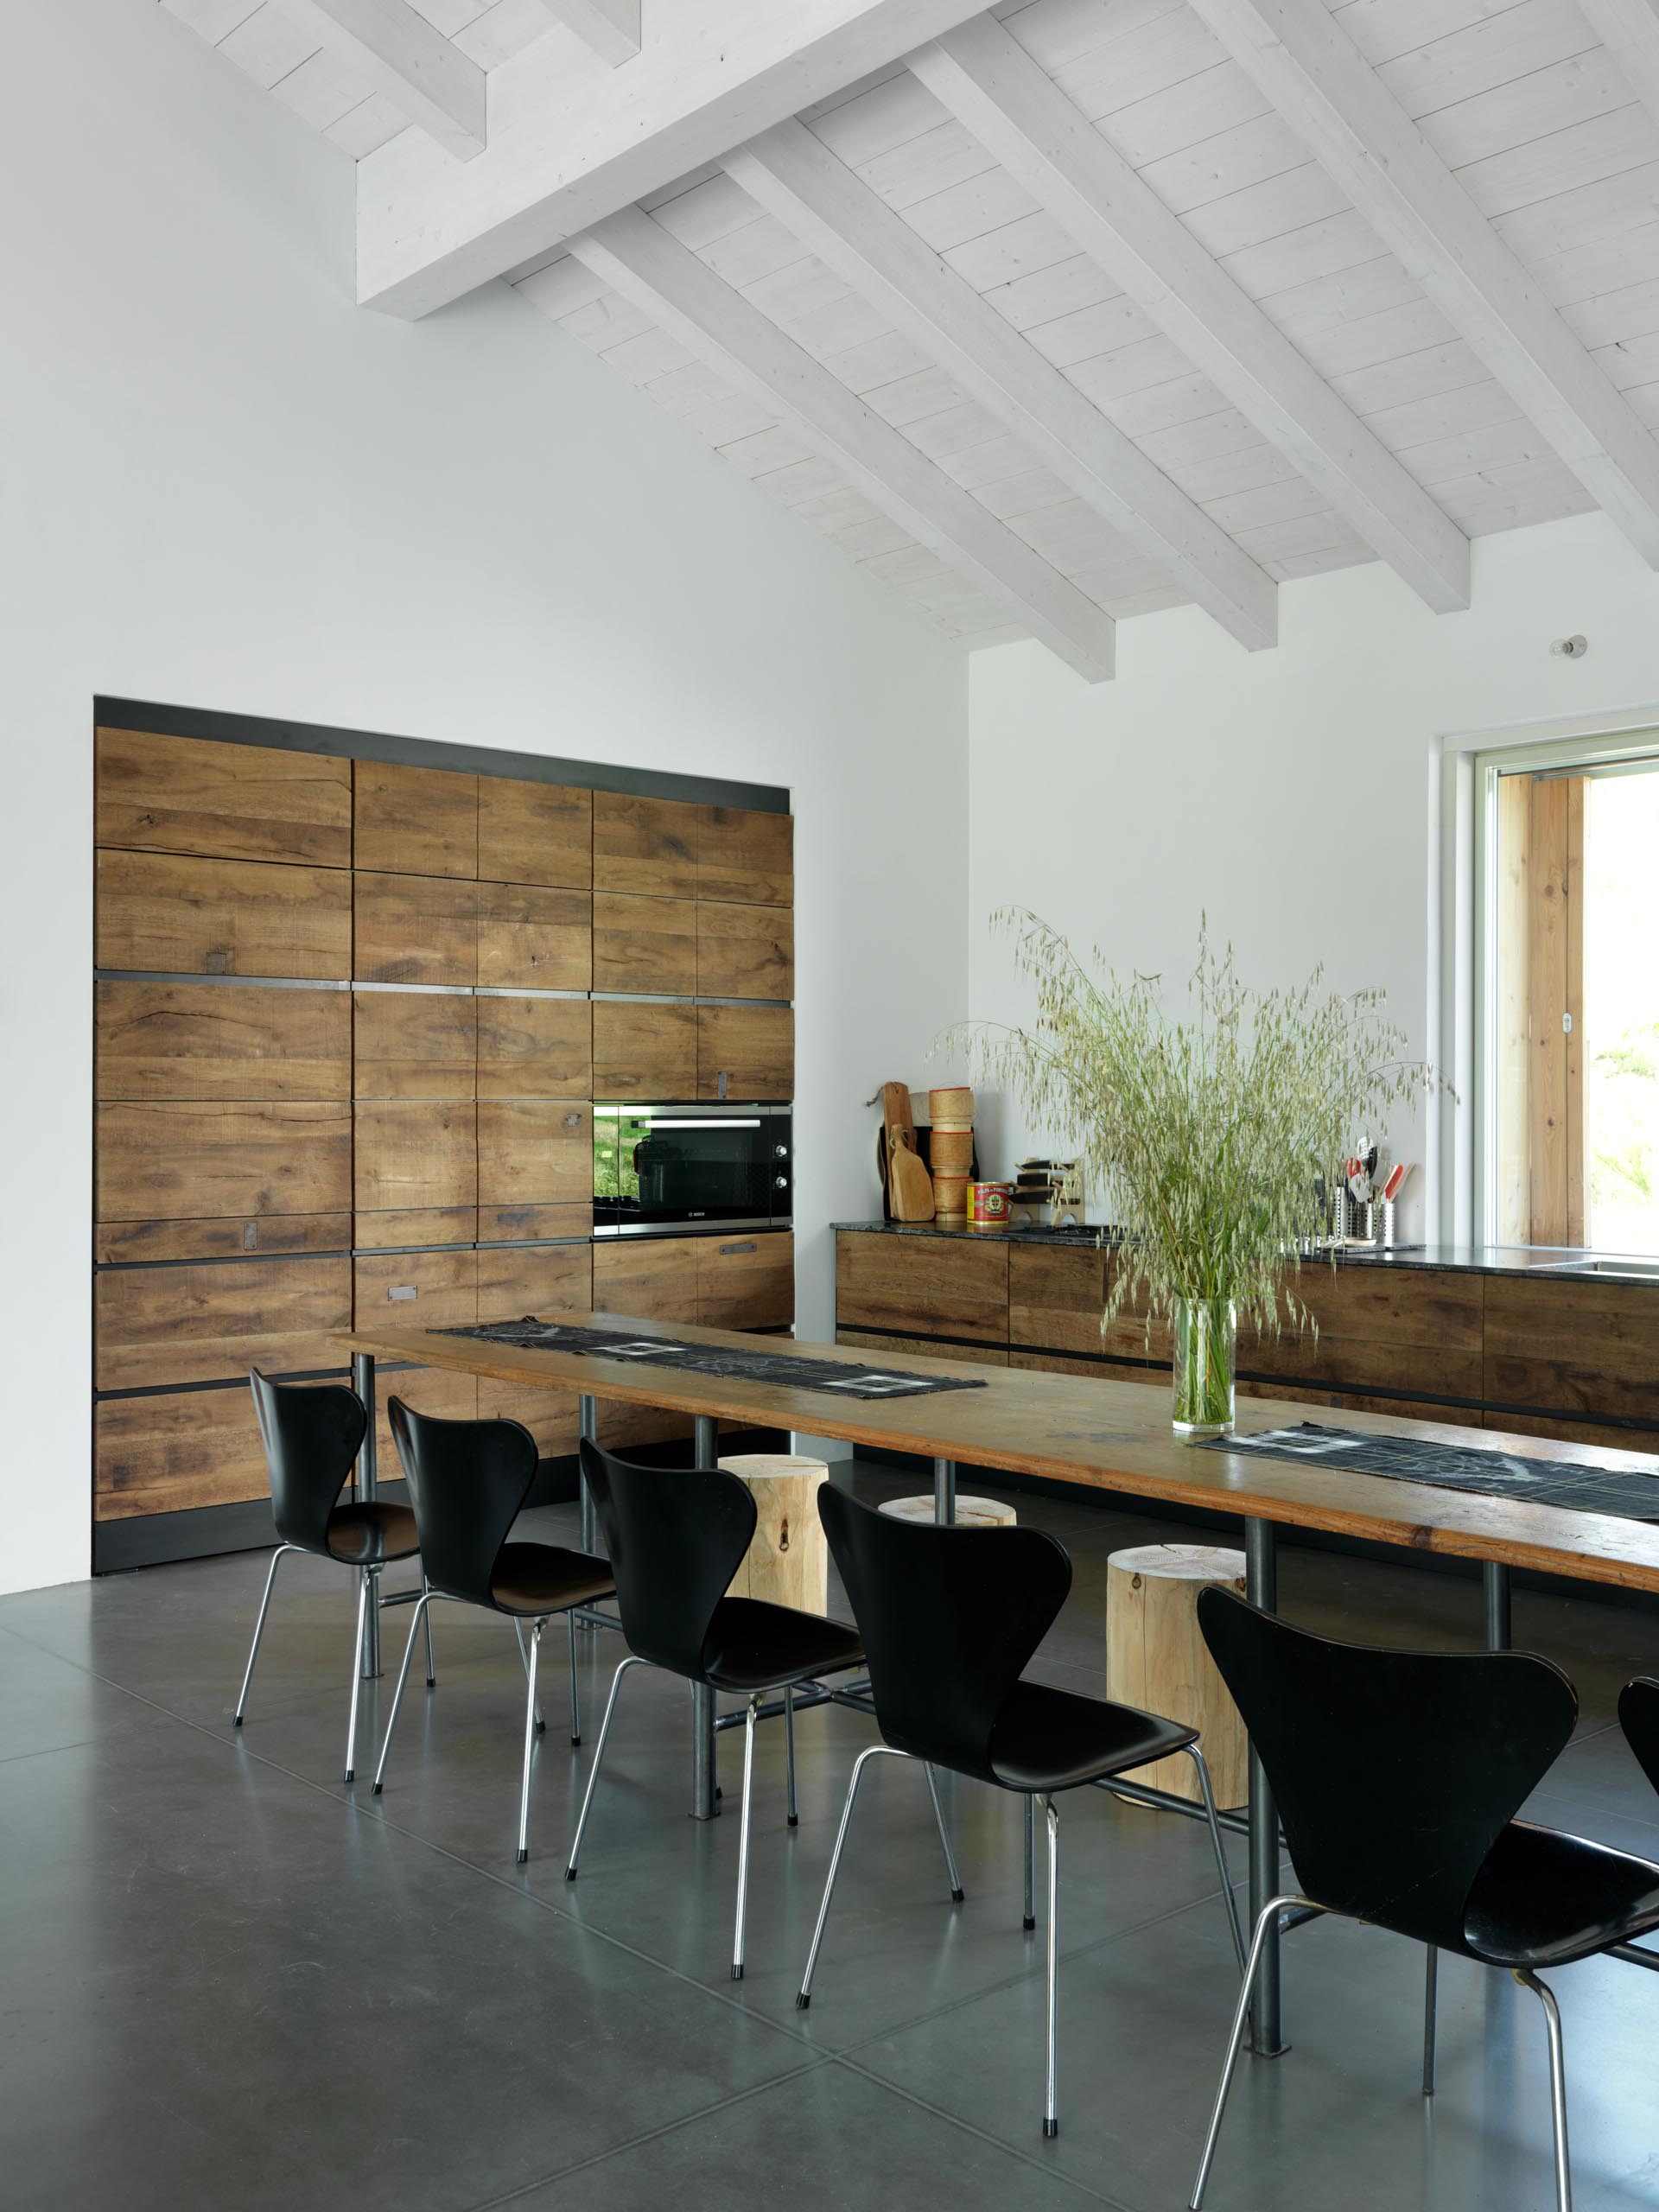 Кухня в этом современном доме сделана на заказ с использованием мелиорированной древесины, что добавляет эстетики фермерскому дому.